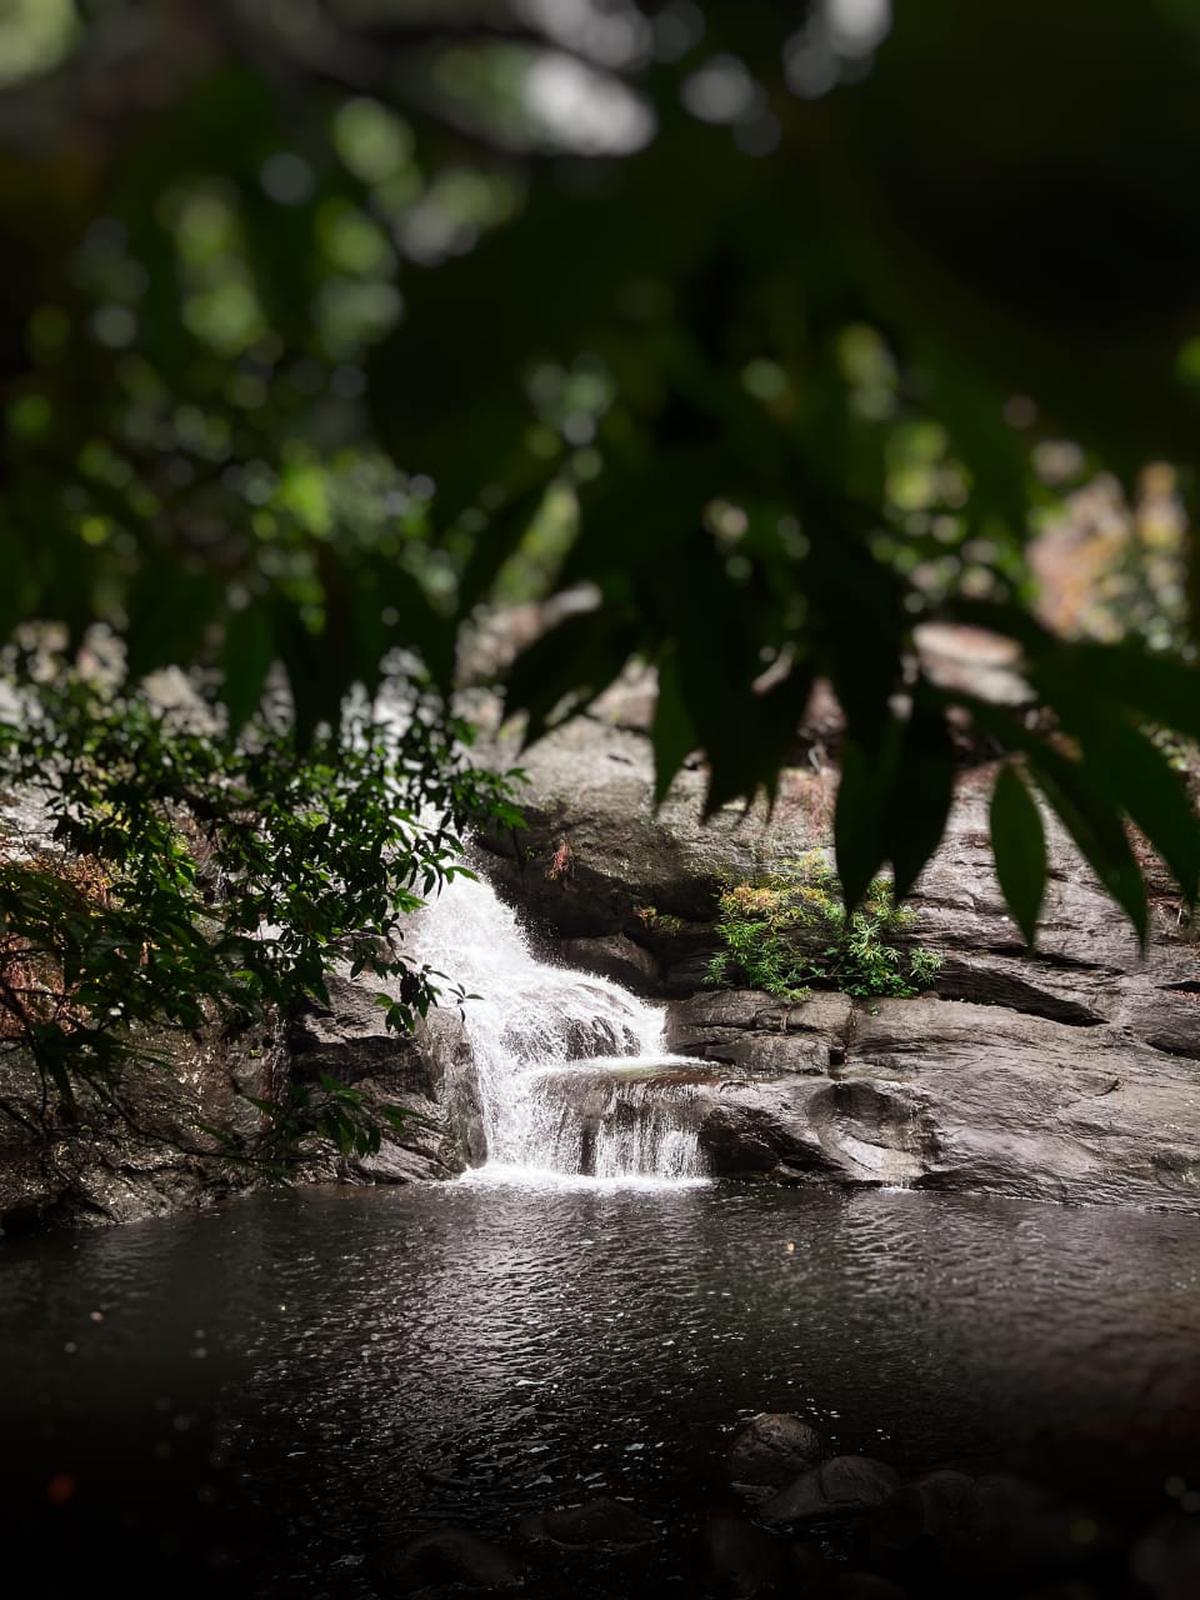 A waterfall that trekkers visit in Wayanad